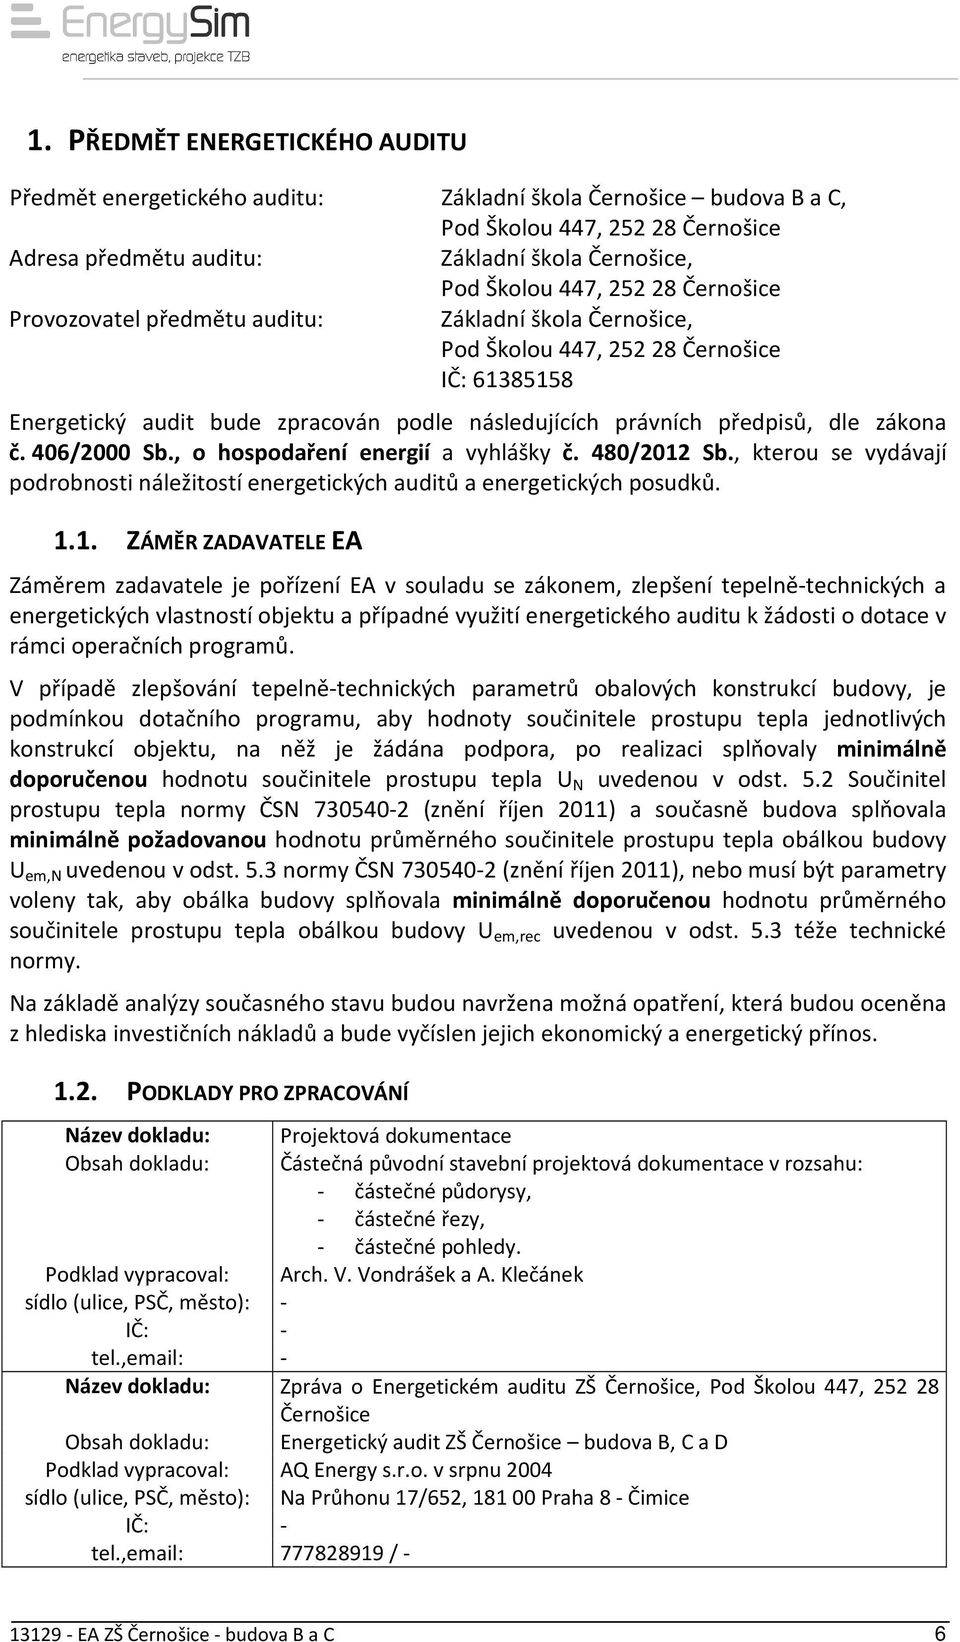 č. 406/2000 Sb., o hospodaření energií a vyhlášky č. 480/2012